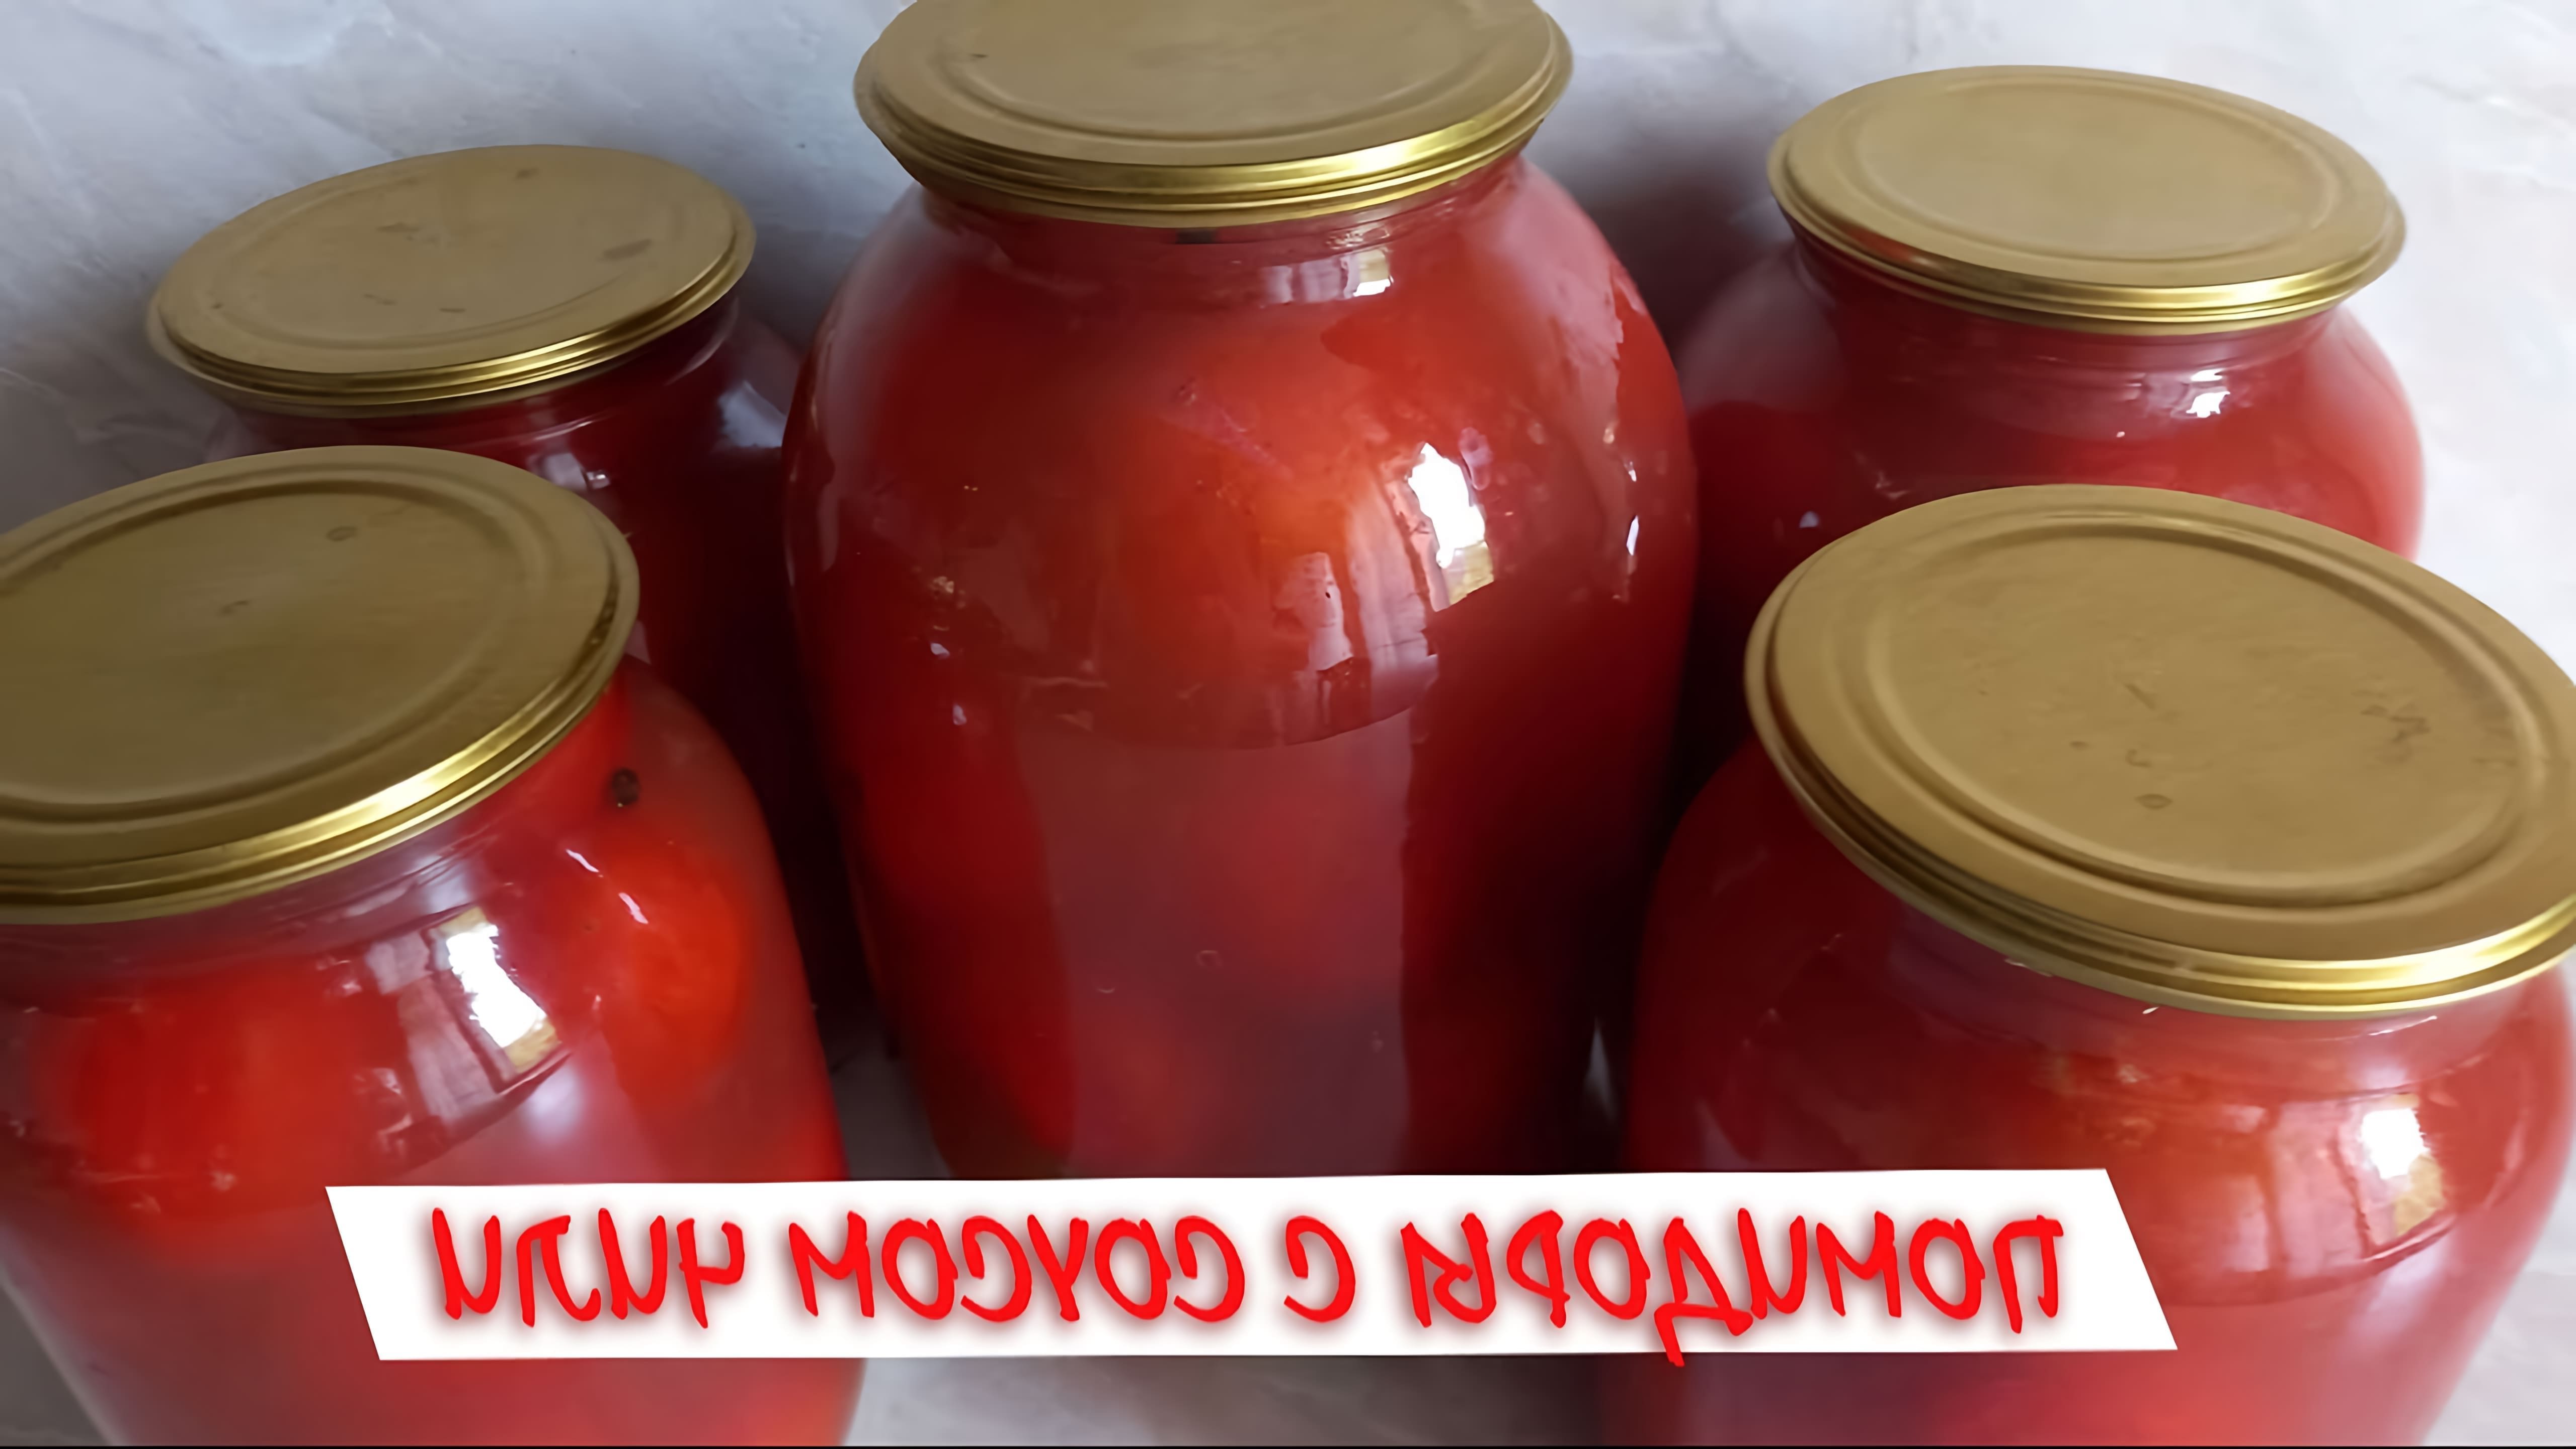 В этом видео демонстрируется процесс консервирования помидоров с соусом чили